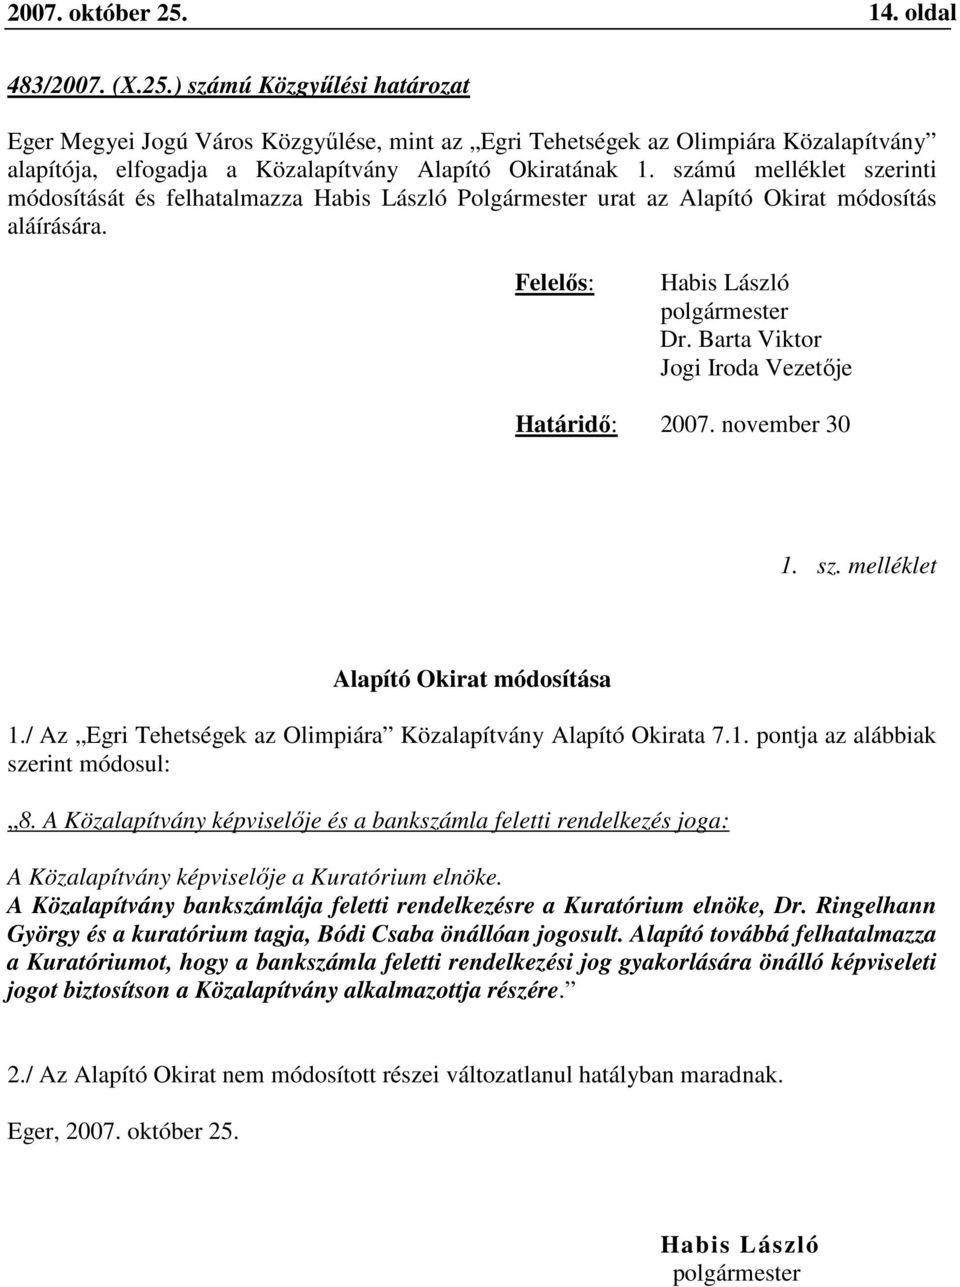 / Az Egri Tehetségek az Olimpiára Közalapítvány Alapító Okirata 7.1. pontja az alábbiak szerint módosul: 8.